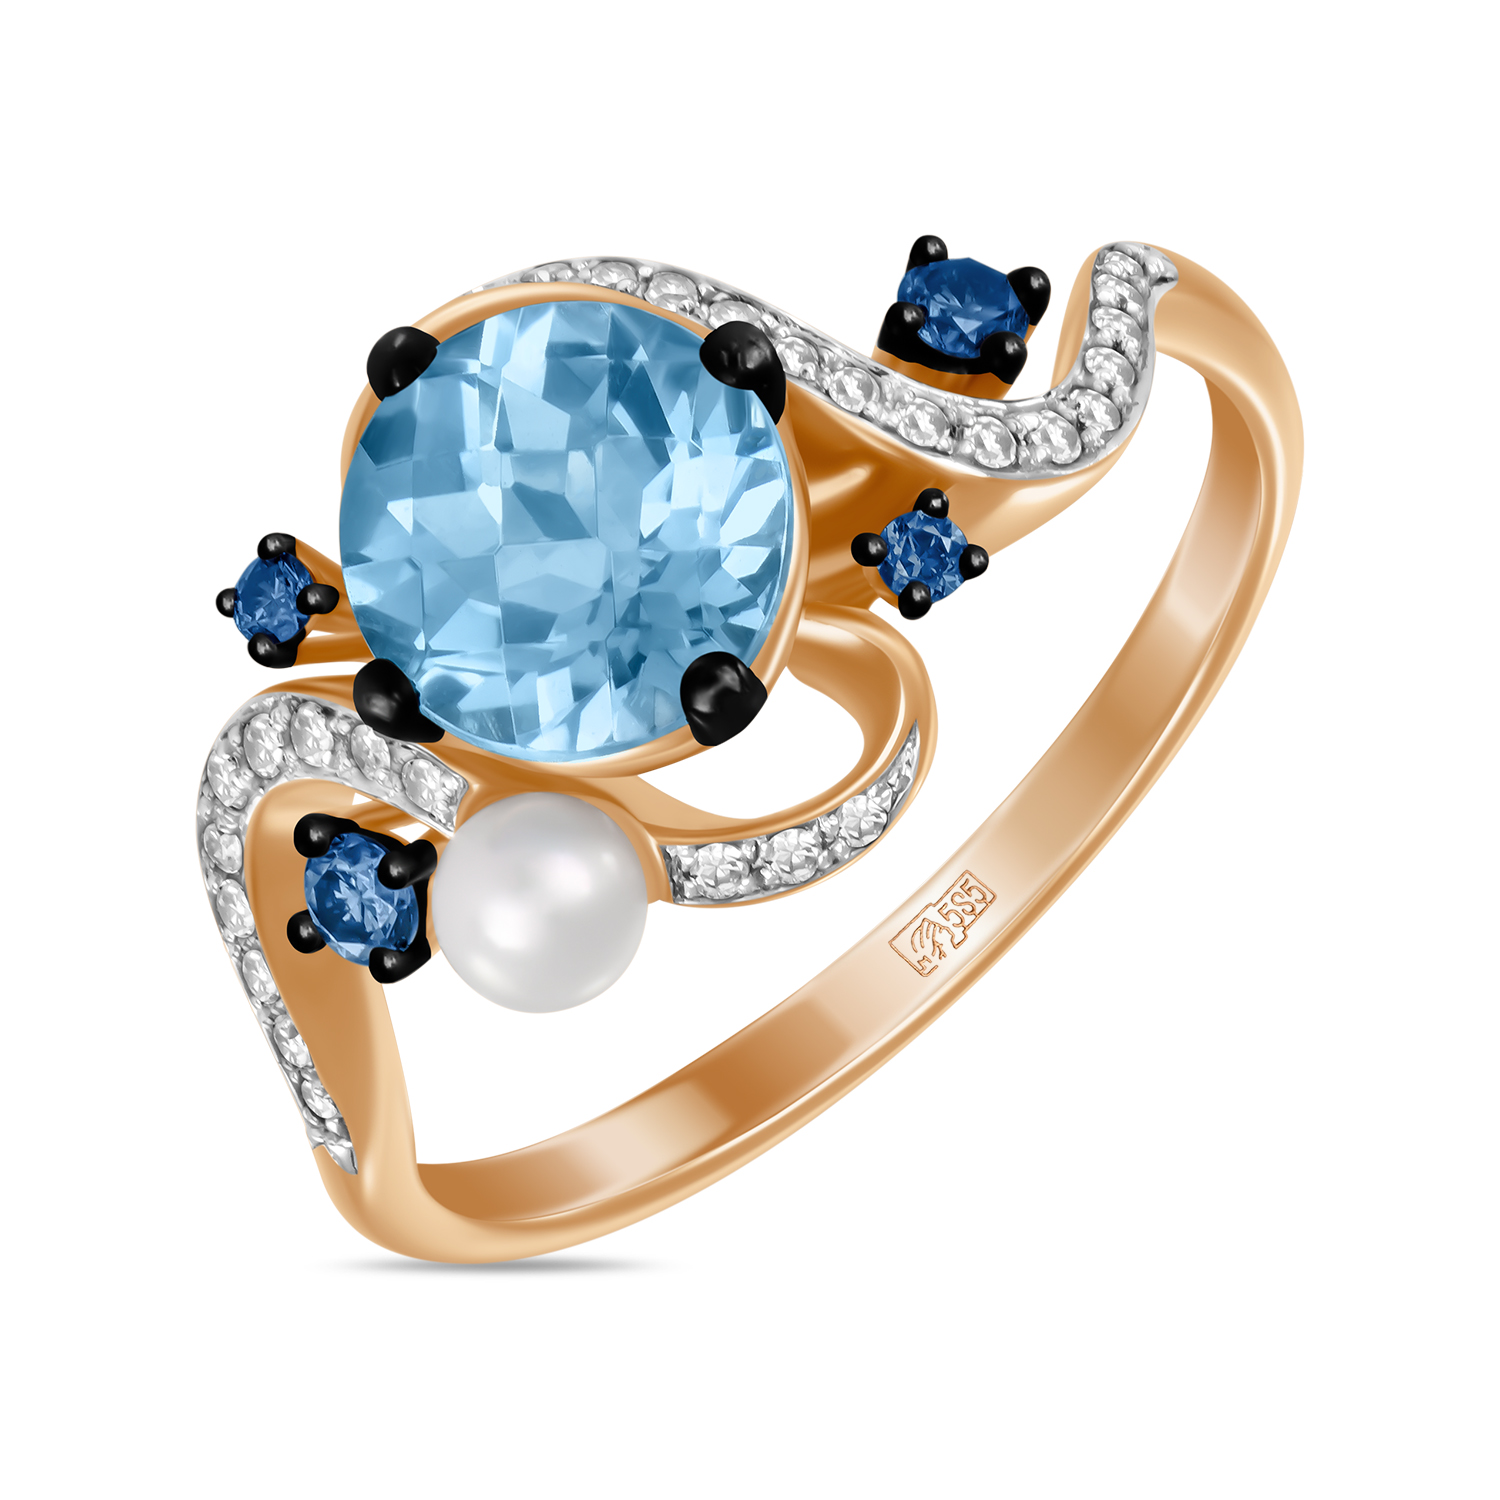 Кольца МЮЗ Золотое кольцо с топазом, бриллиантами, цветными бриллиантами и жемчугом кольца мюз золотое кольцо с аметистом топазом бриллиантами и цветными бриллиантами